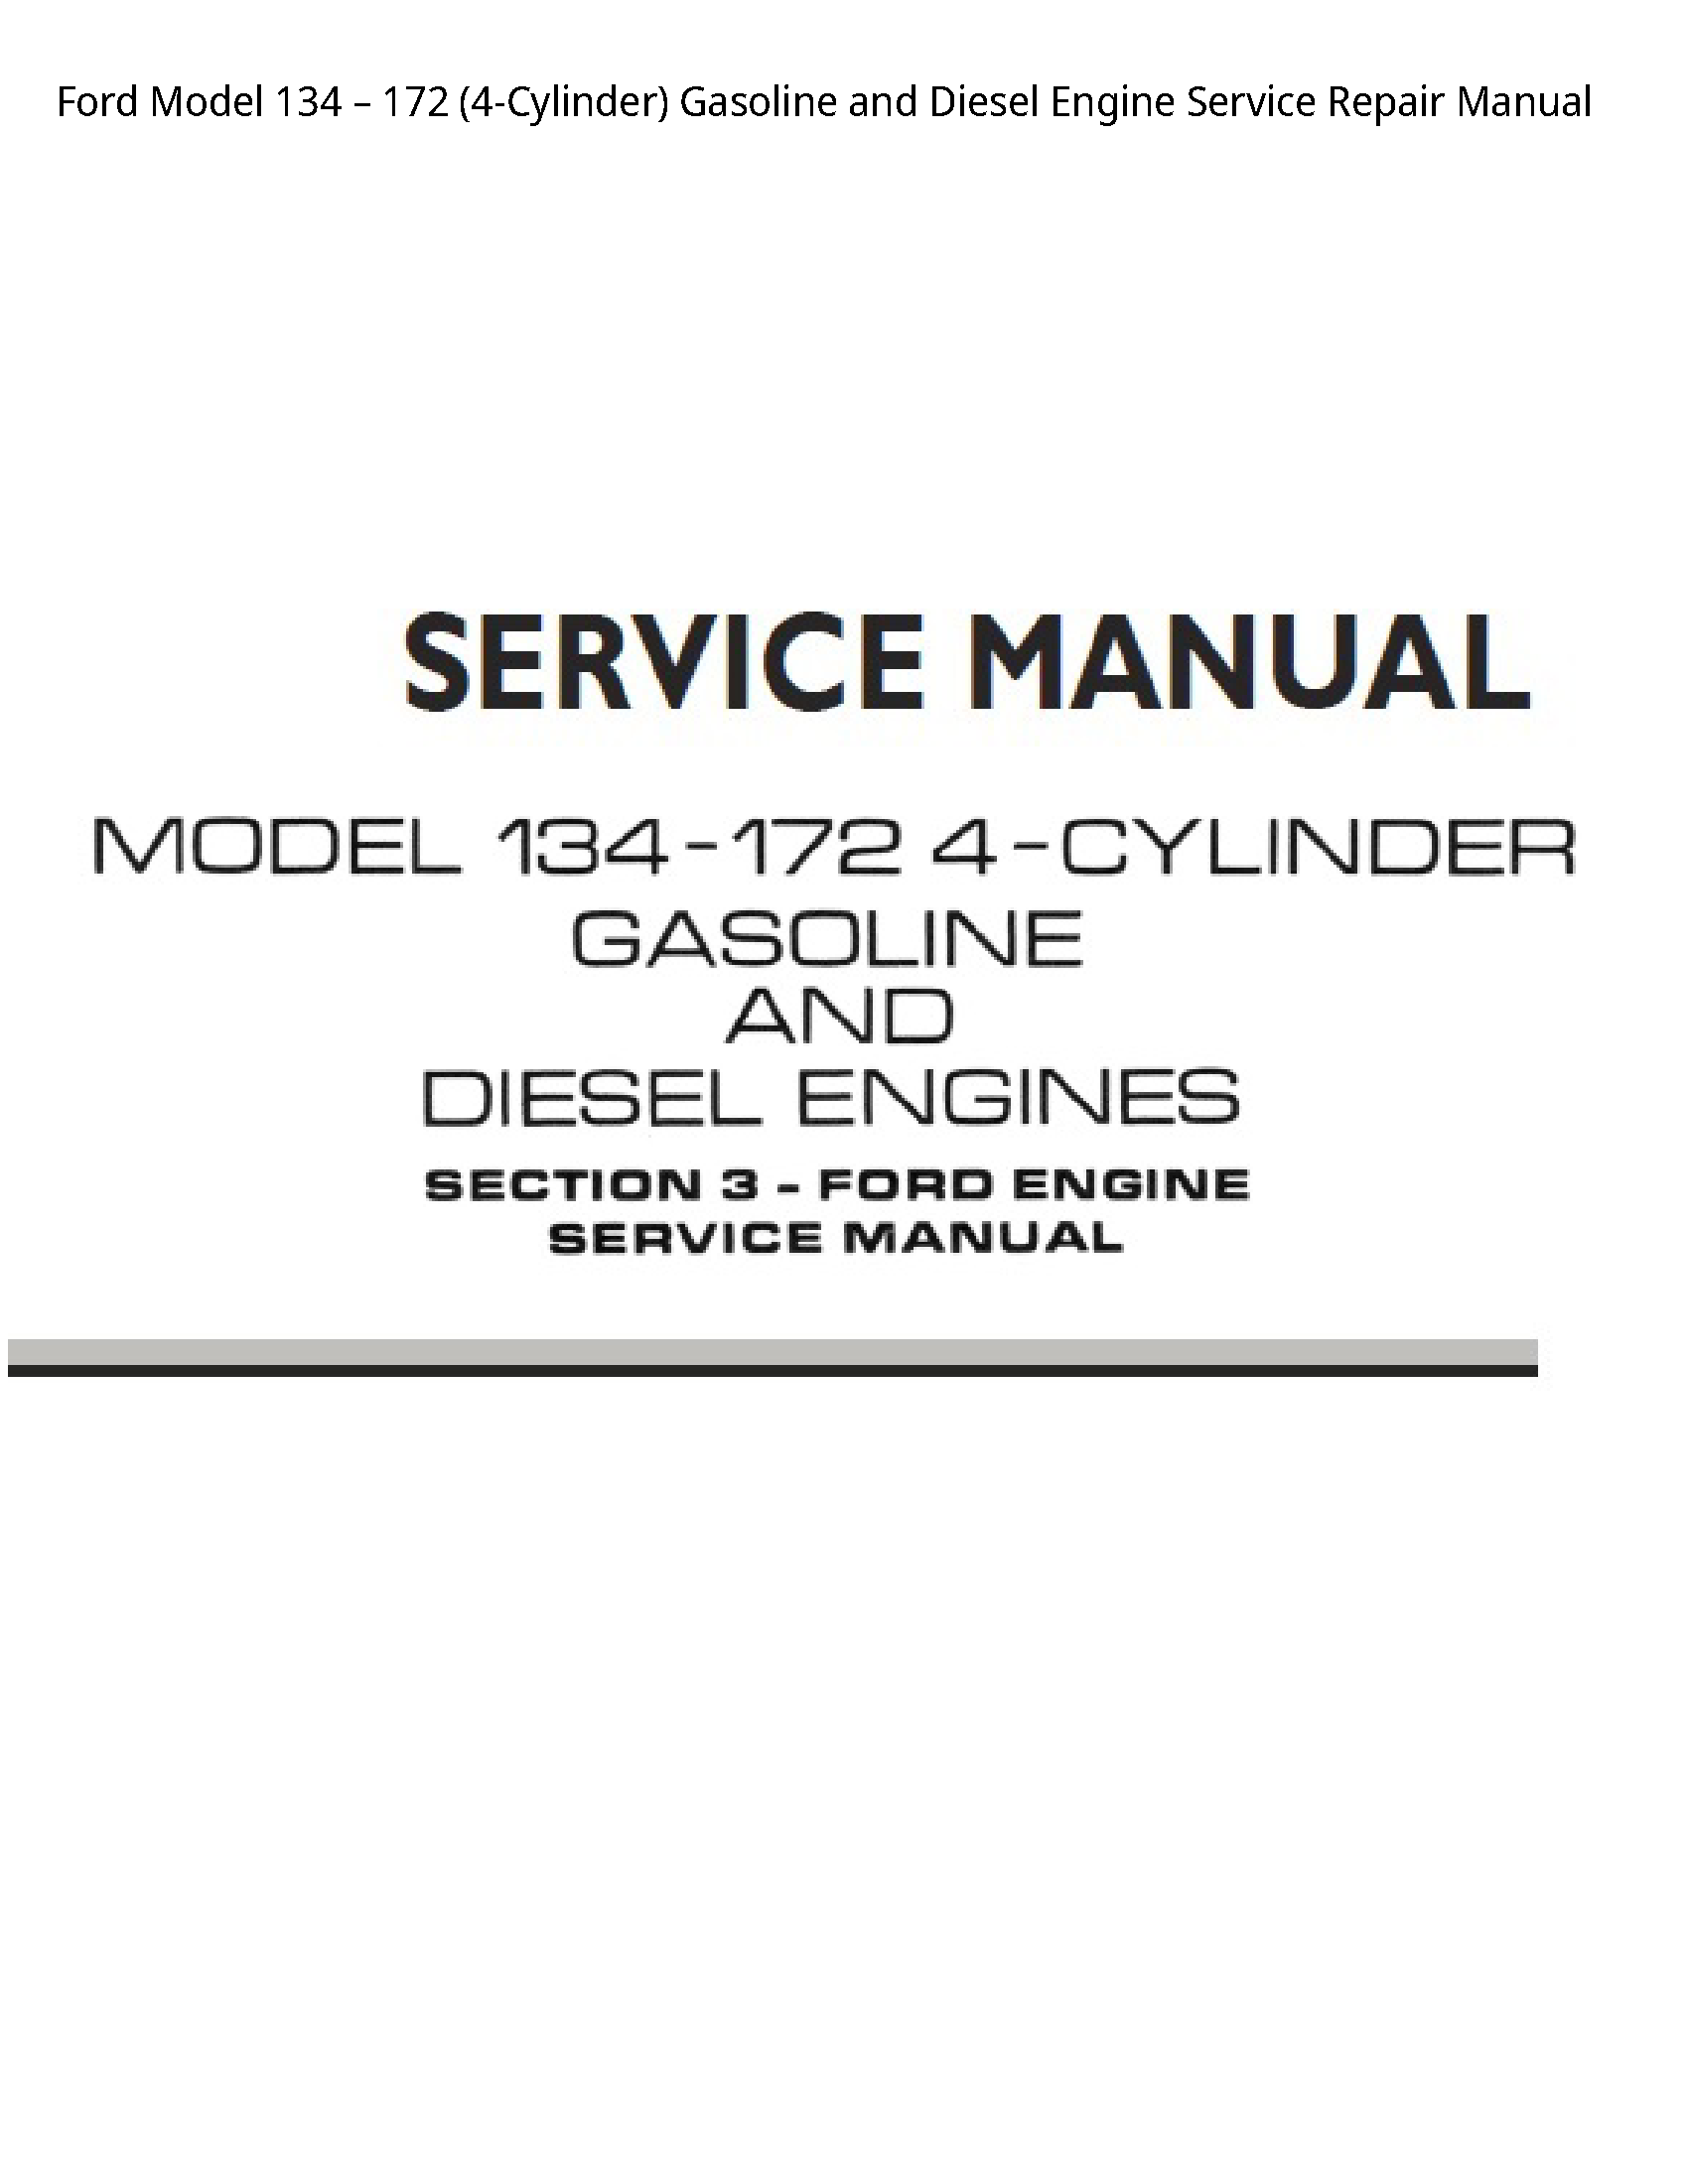 Ford 134 Model Gasoline  Diesel Engine manual